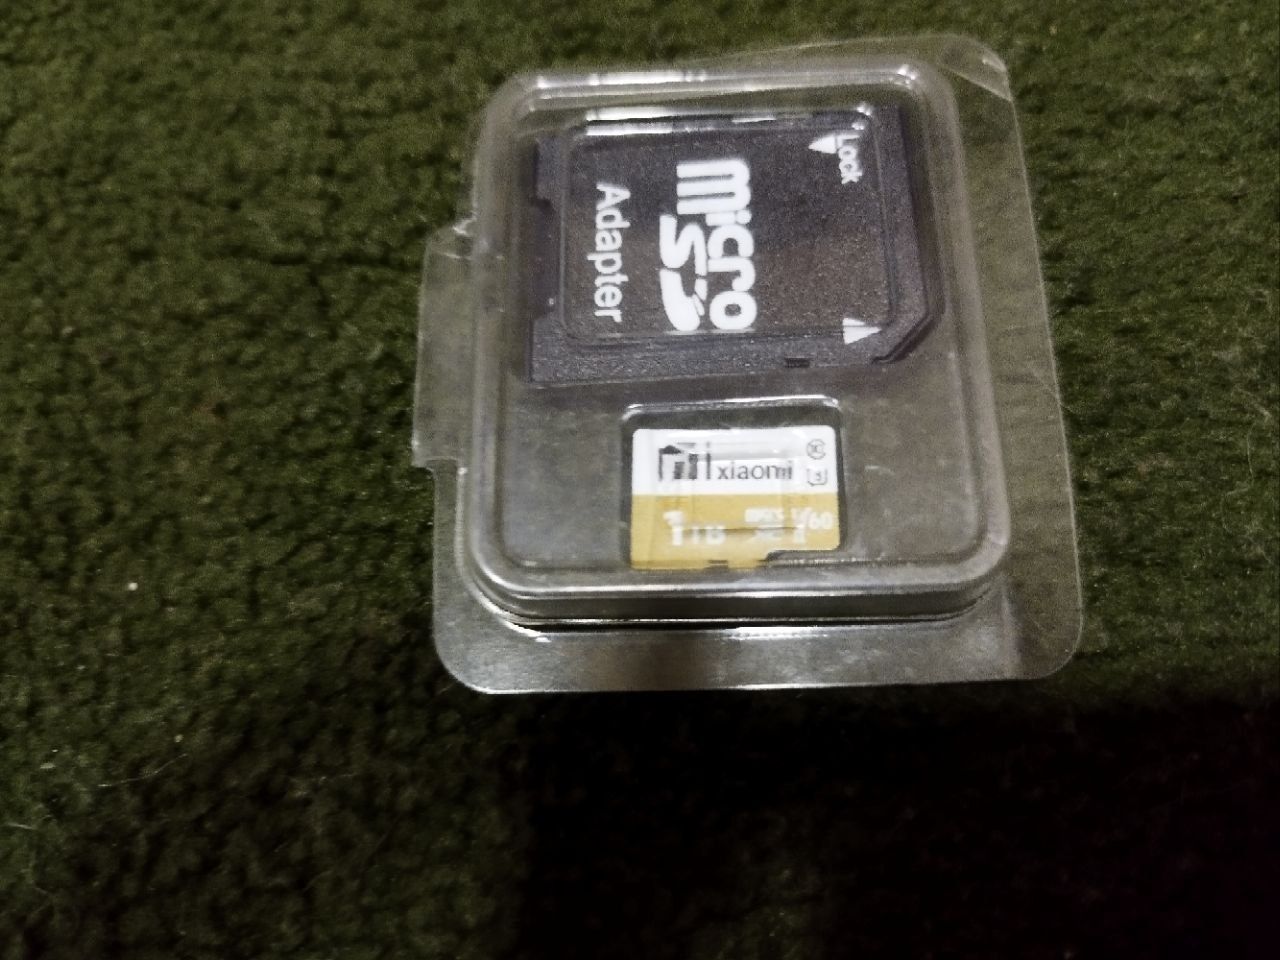 Xiaomi fleshka 1tb (1024GB)